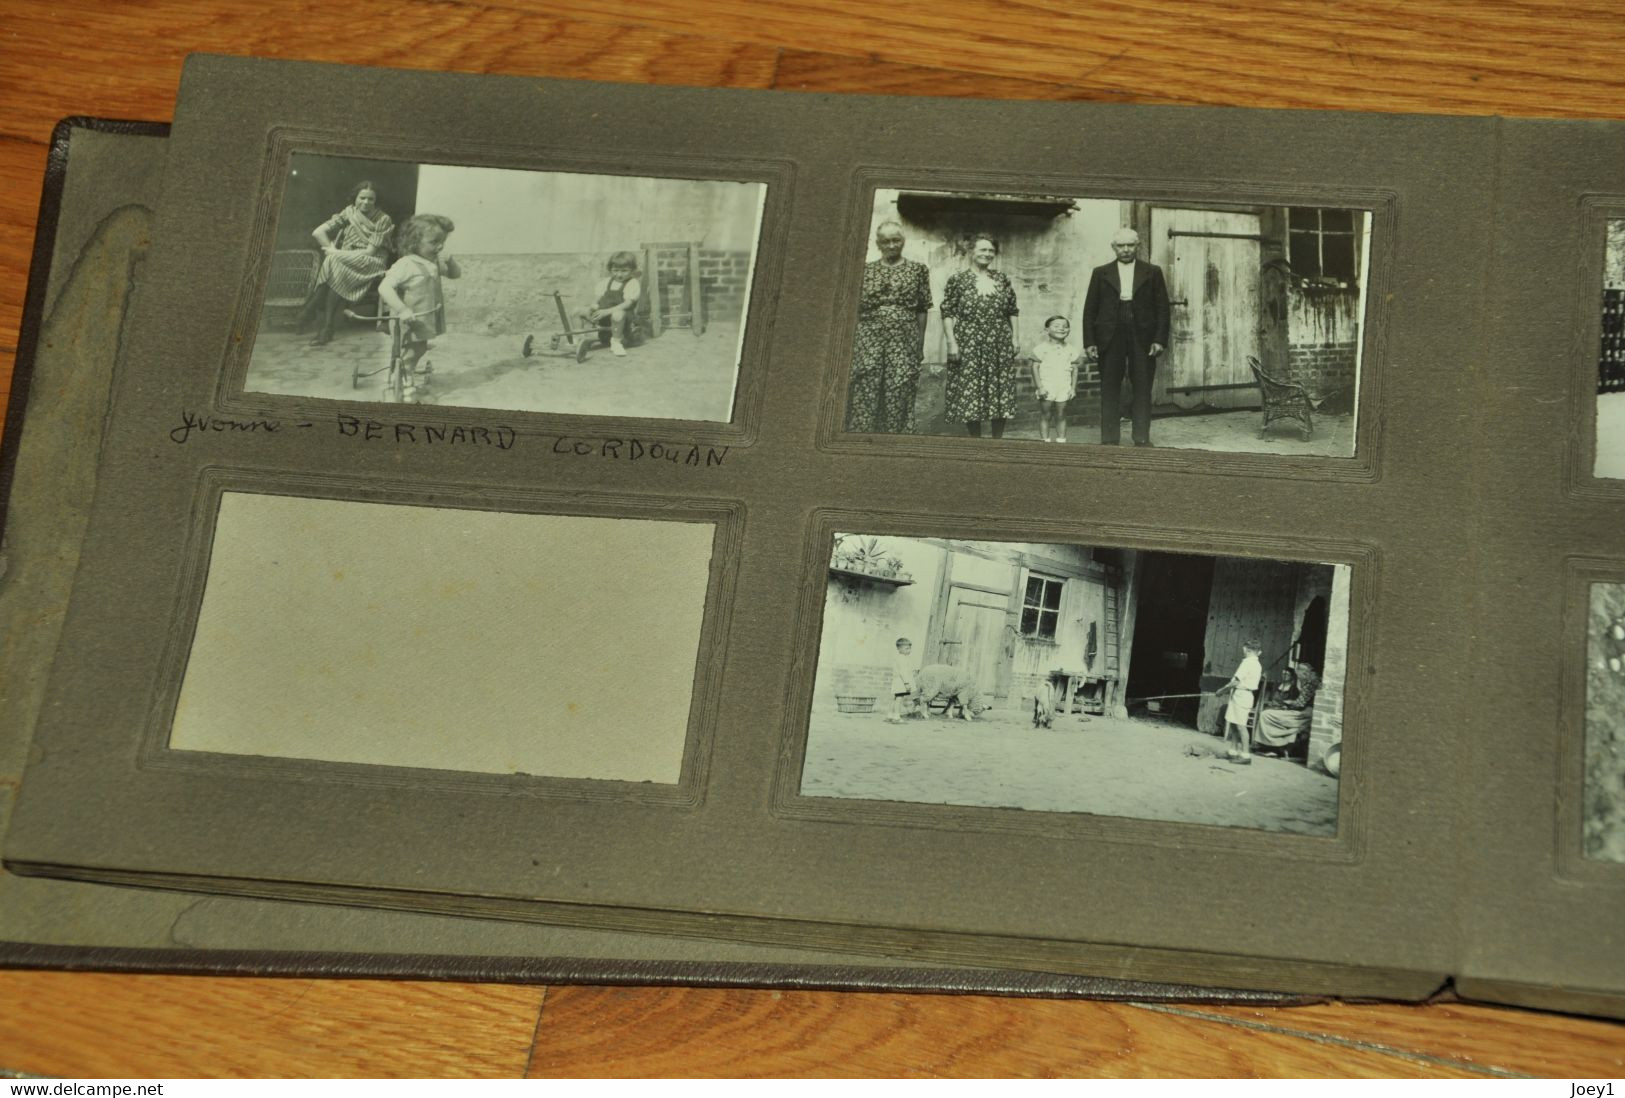 Bel Album photos, vie à la campagne années 30,180 photos